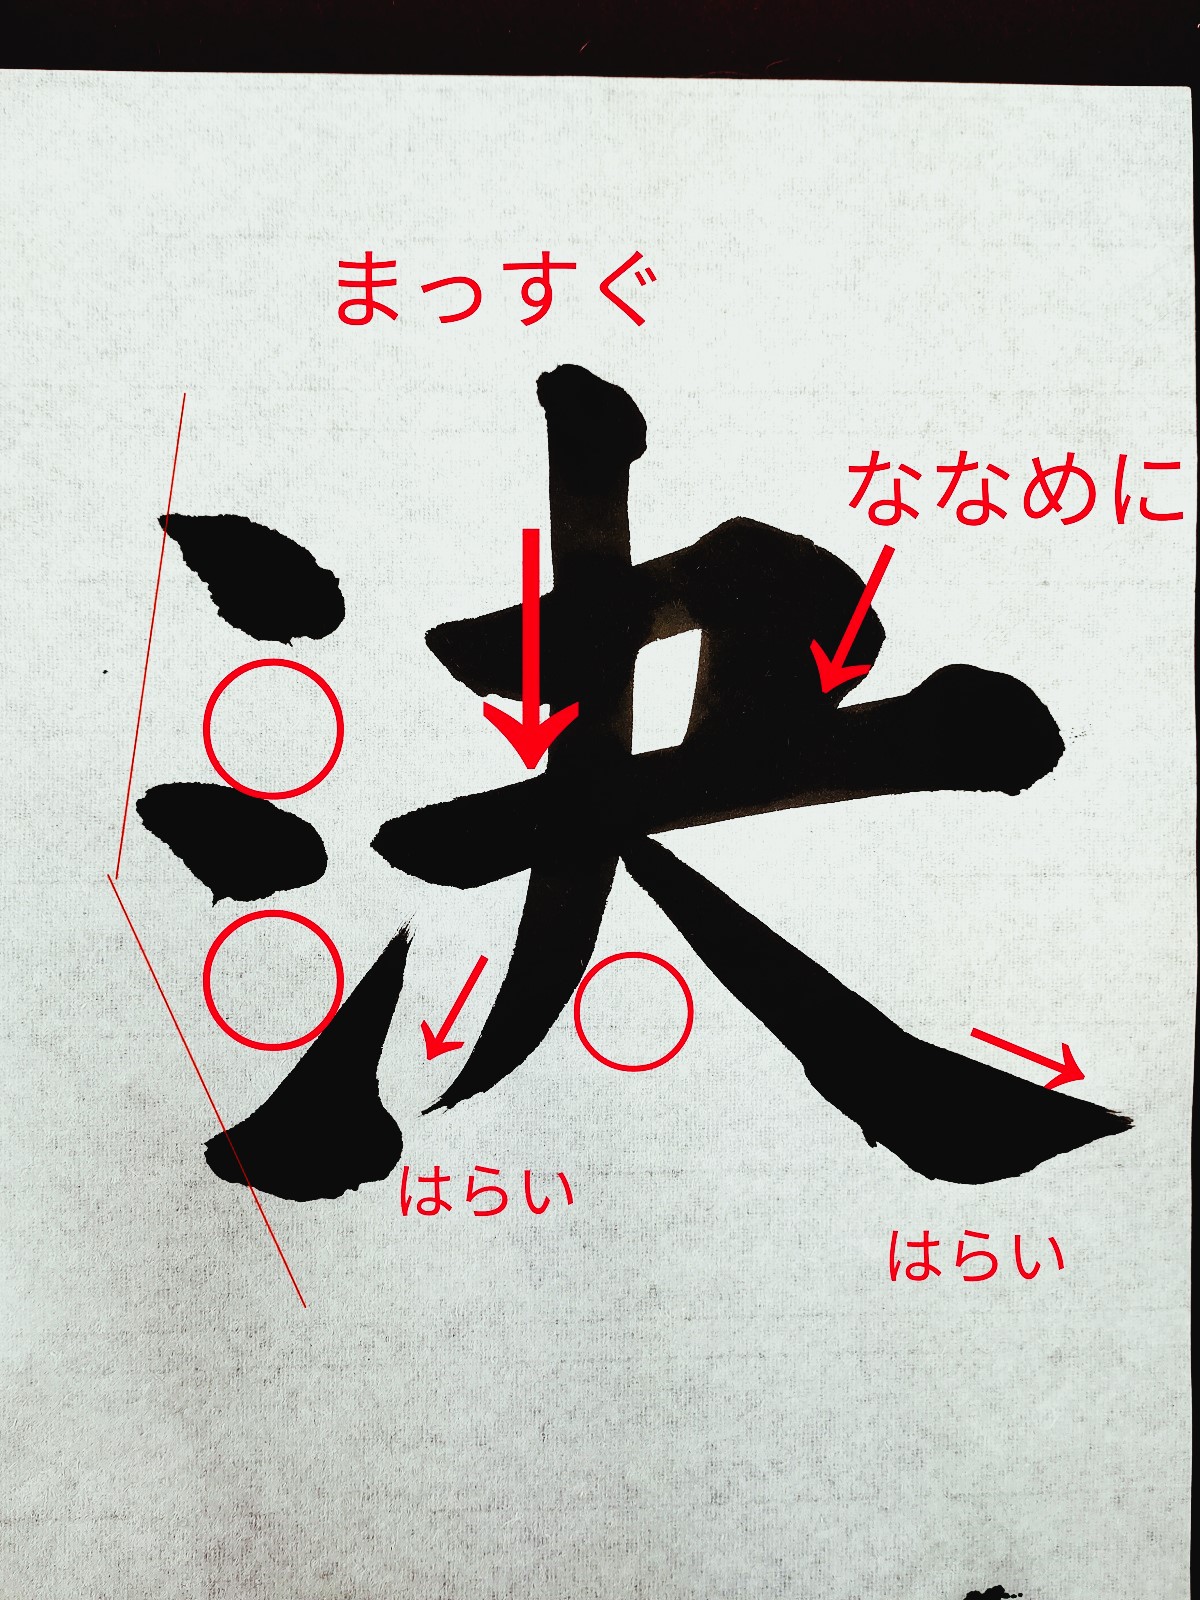 【決】決意表明で選ばれやすい漢字「決」の書道書き方